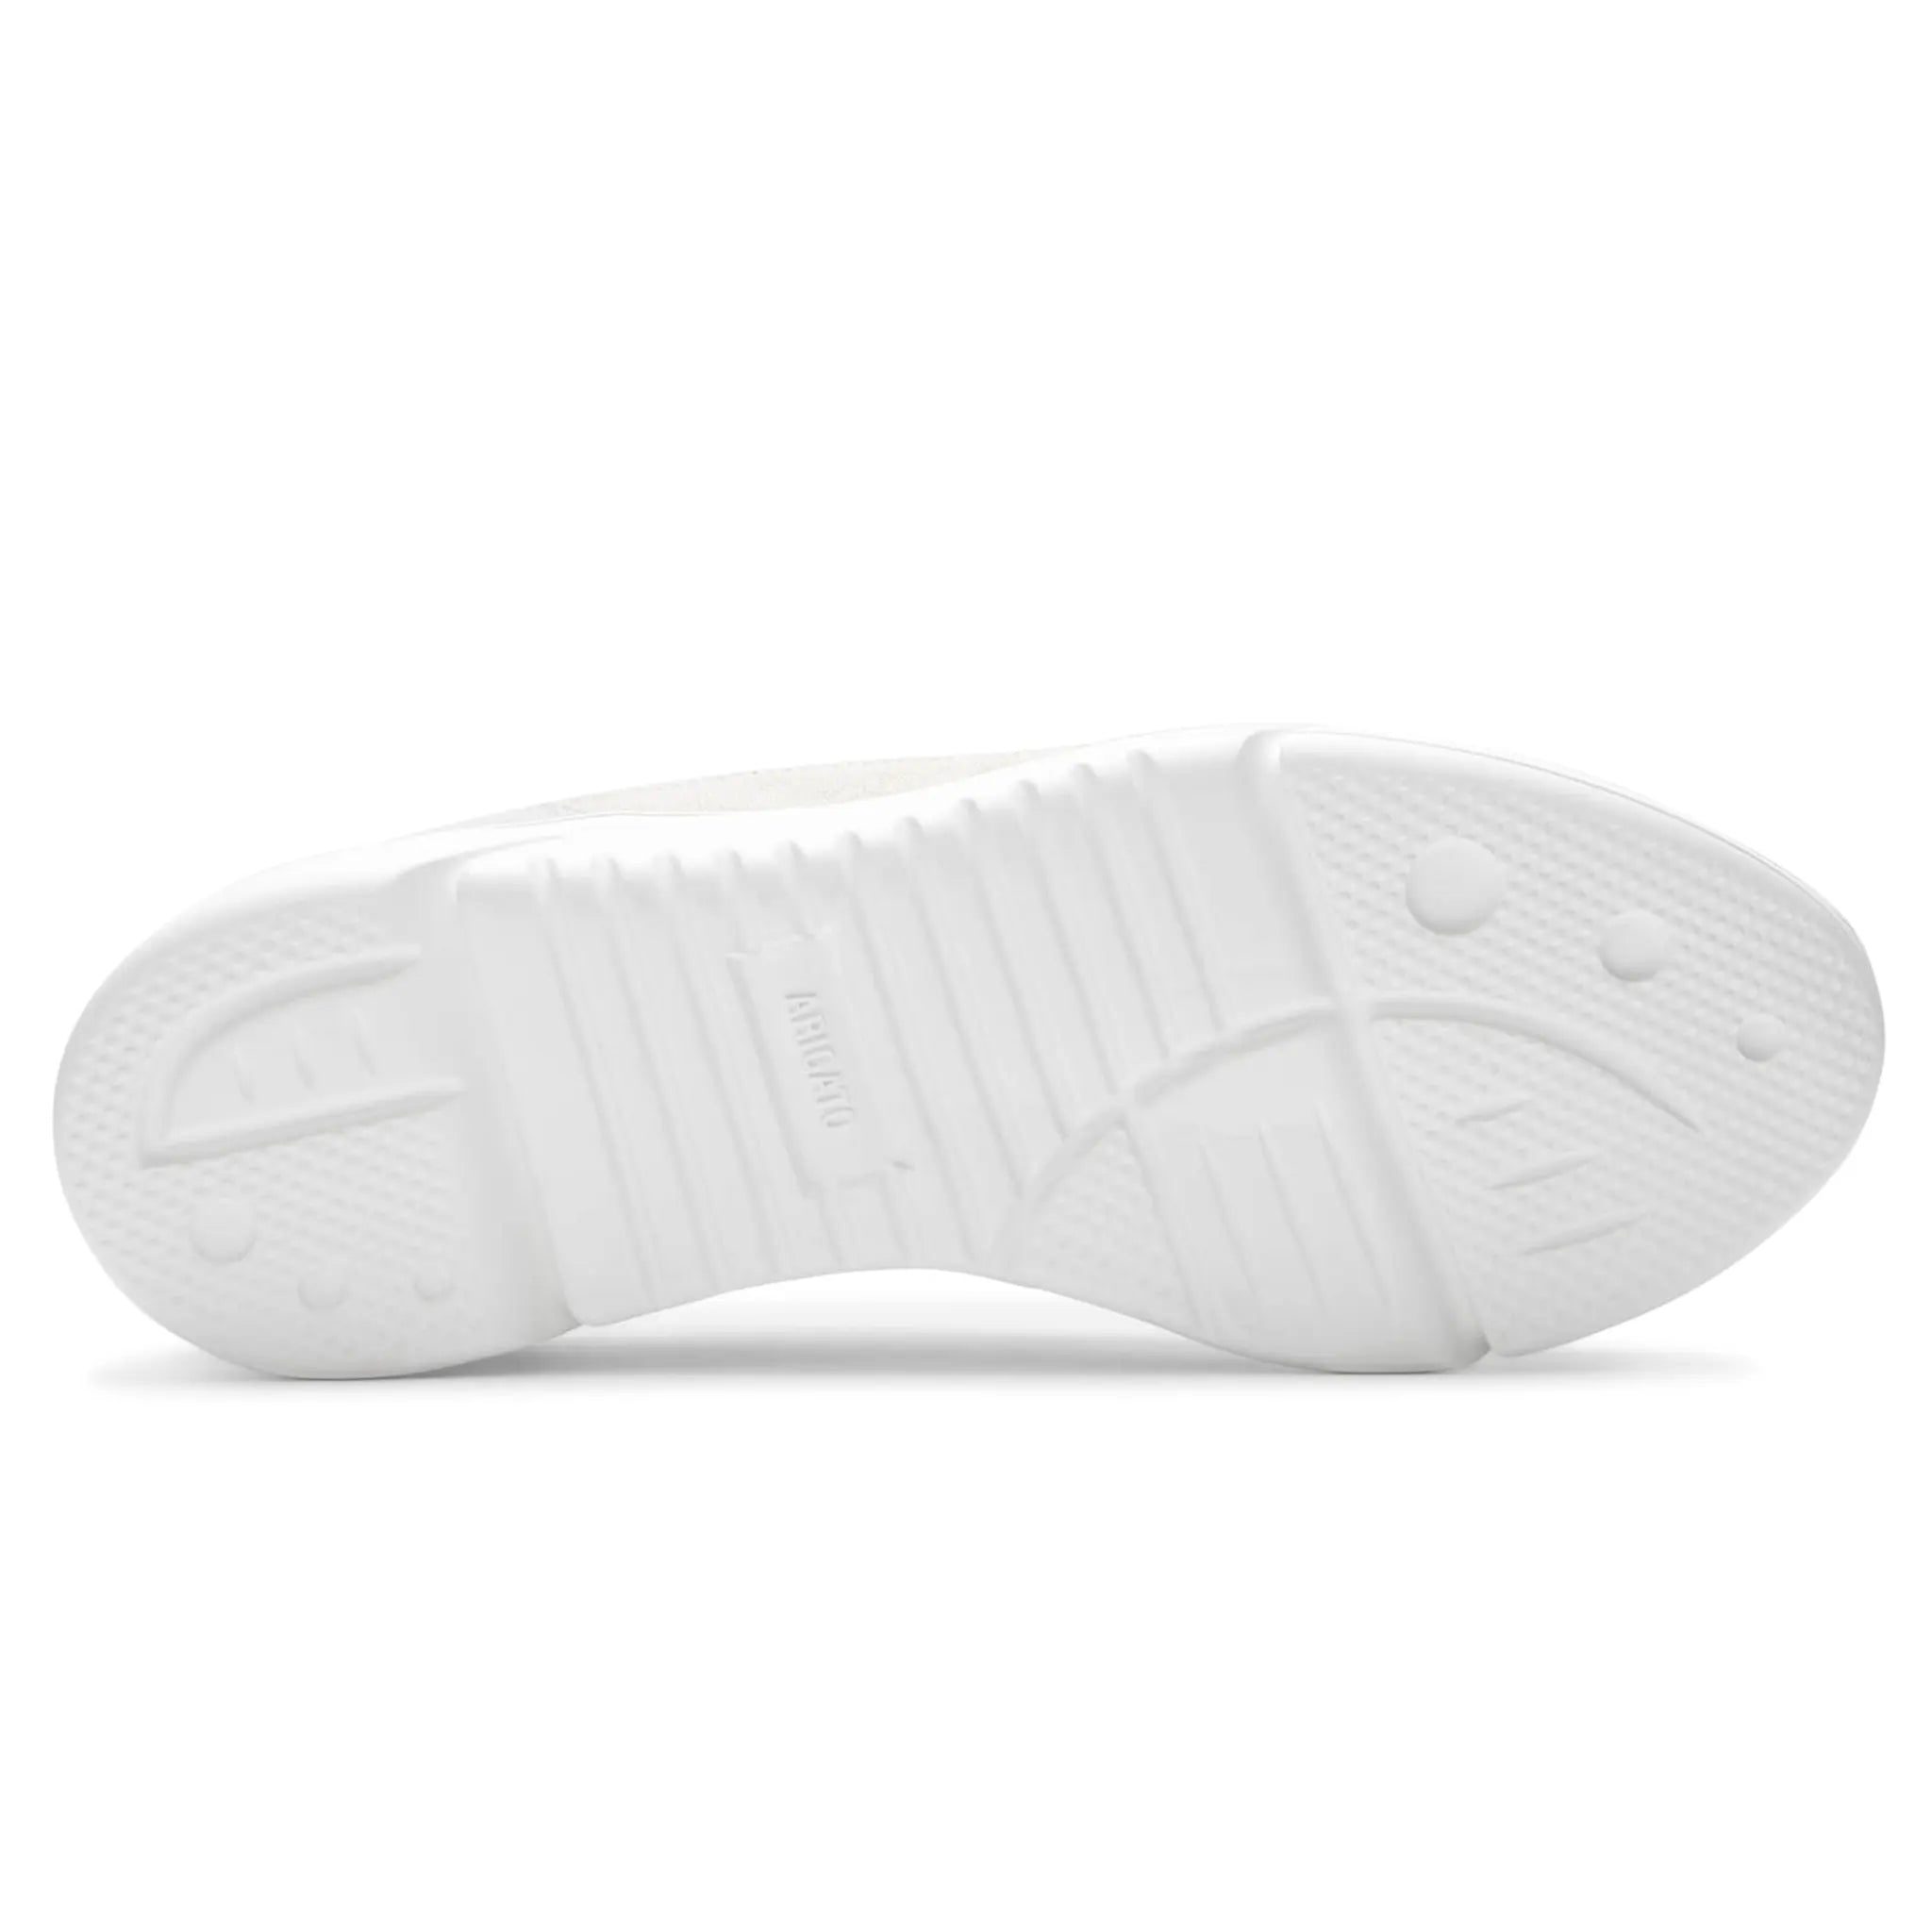 Sole view of Axel Arigato Genesis Beige Grey Sneaker F1703001